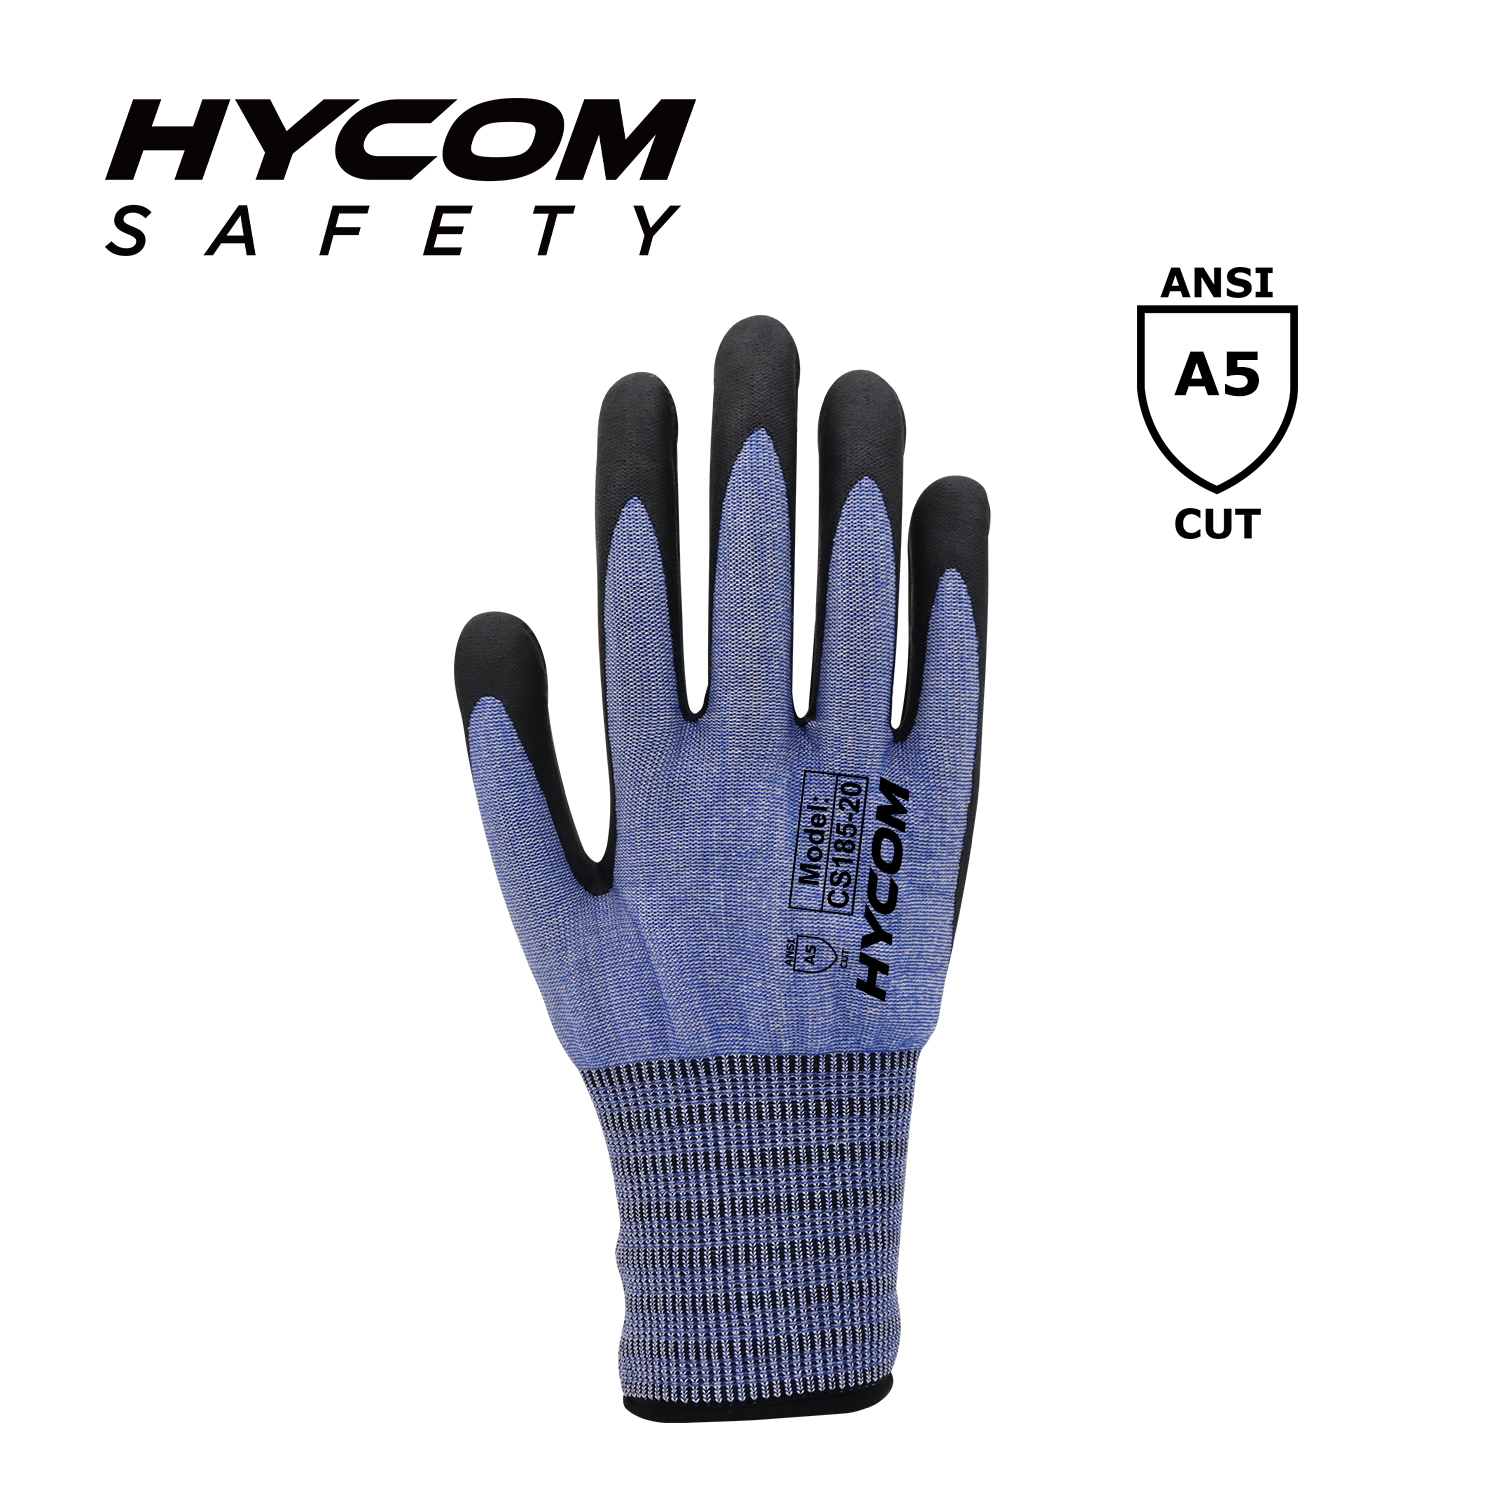 HYCOM 18G ANSI 5 Schnittfester Handschuh mit Schaumstoff-Nitril-Beschichtung. Superdünnere PSA-Handschuhe für die Arbeit